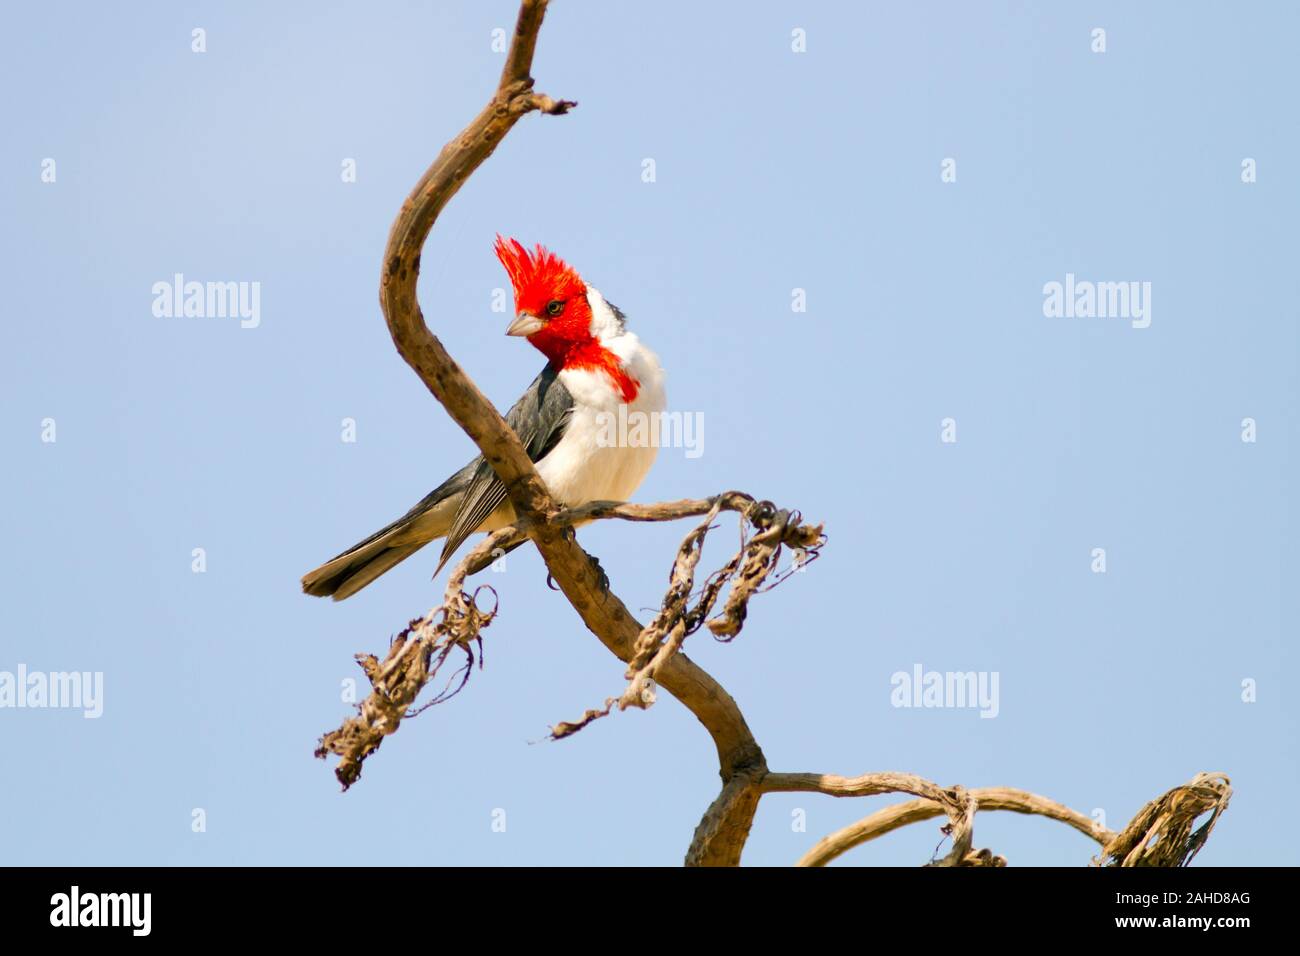 Rojo-crested cardenal Paroaria coronata, un pájaro cantor con una prominente cabeza roja y cresta. Esta especie pertenece a la familia de las tangaras Thraupidae. Foto de stock